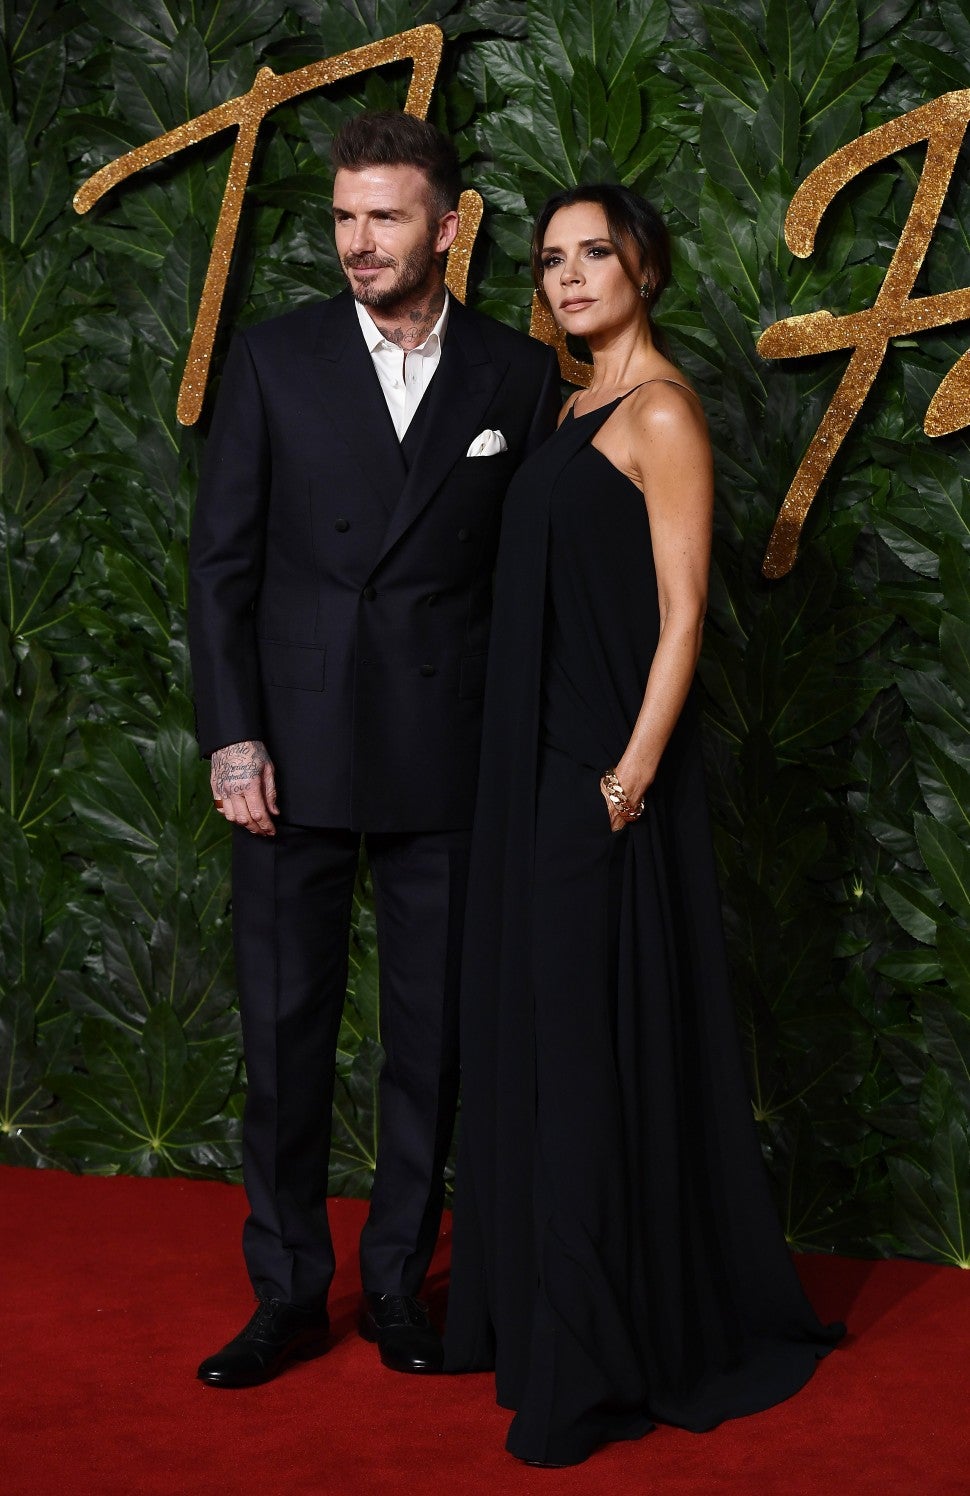 David and Victoria Beckham at 2018 British Fashion Awards.